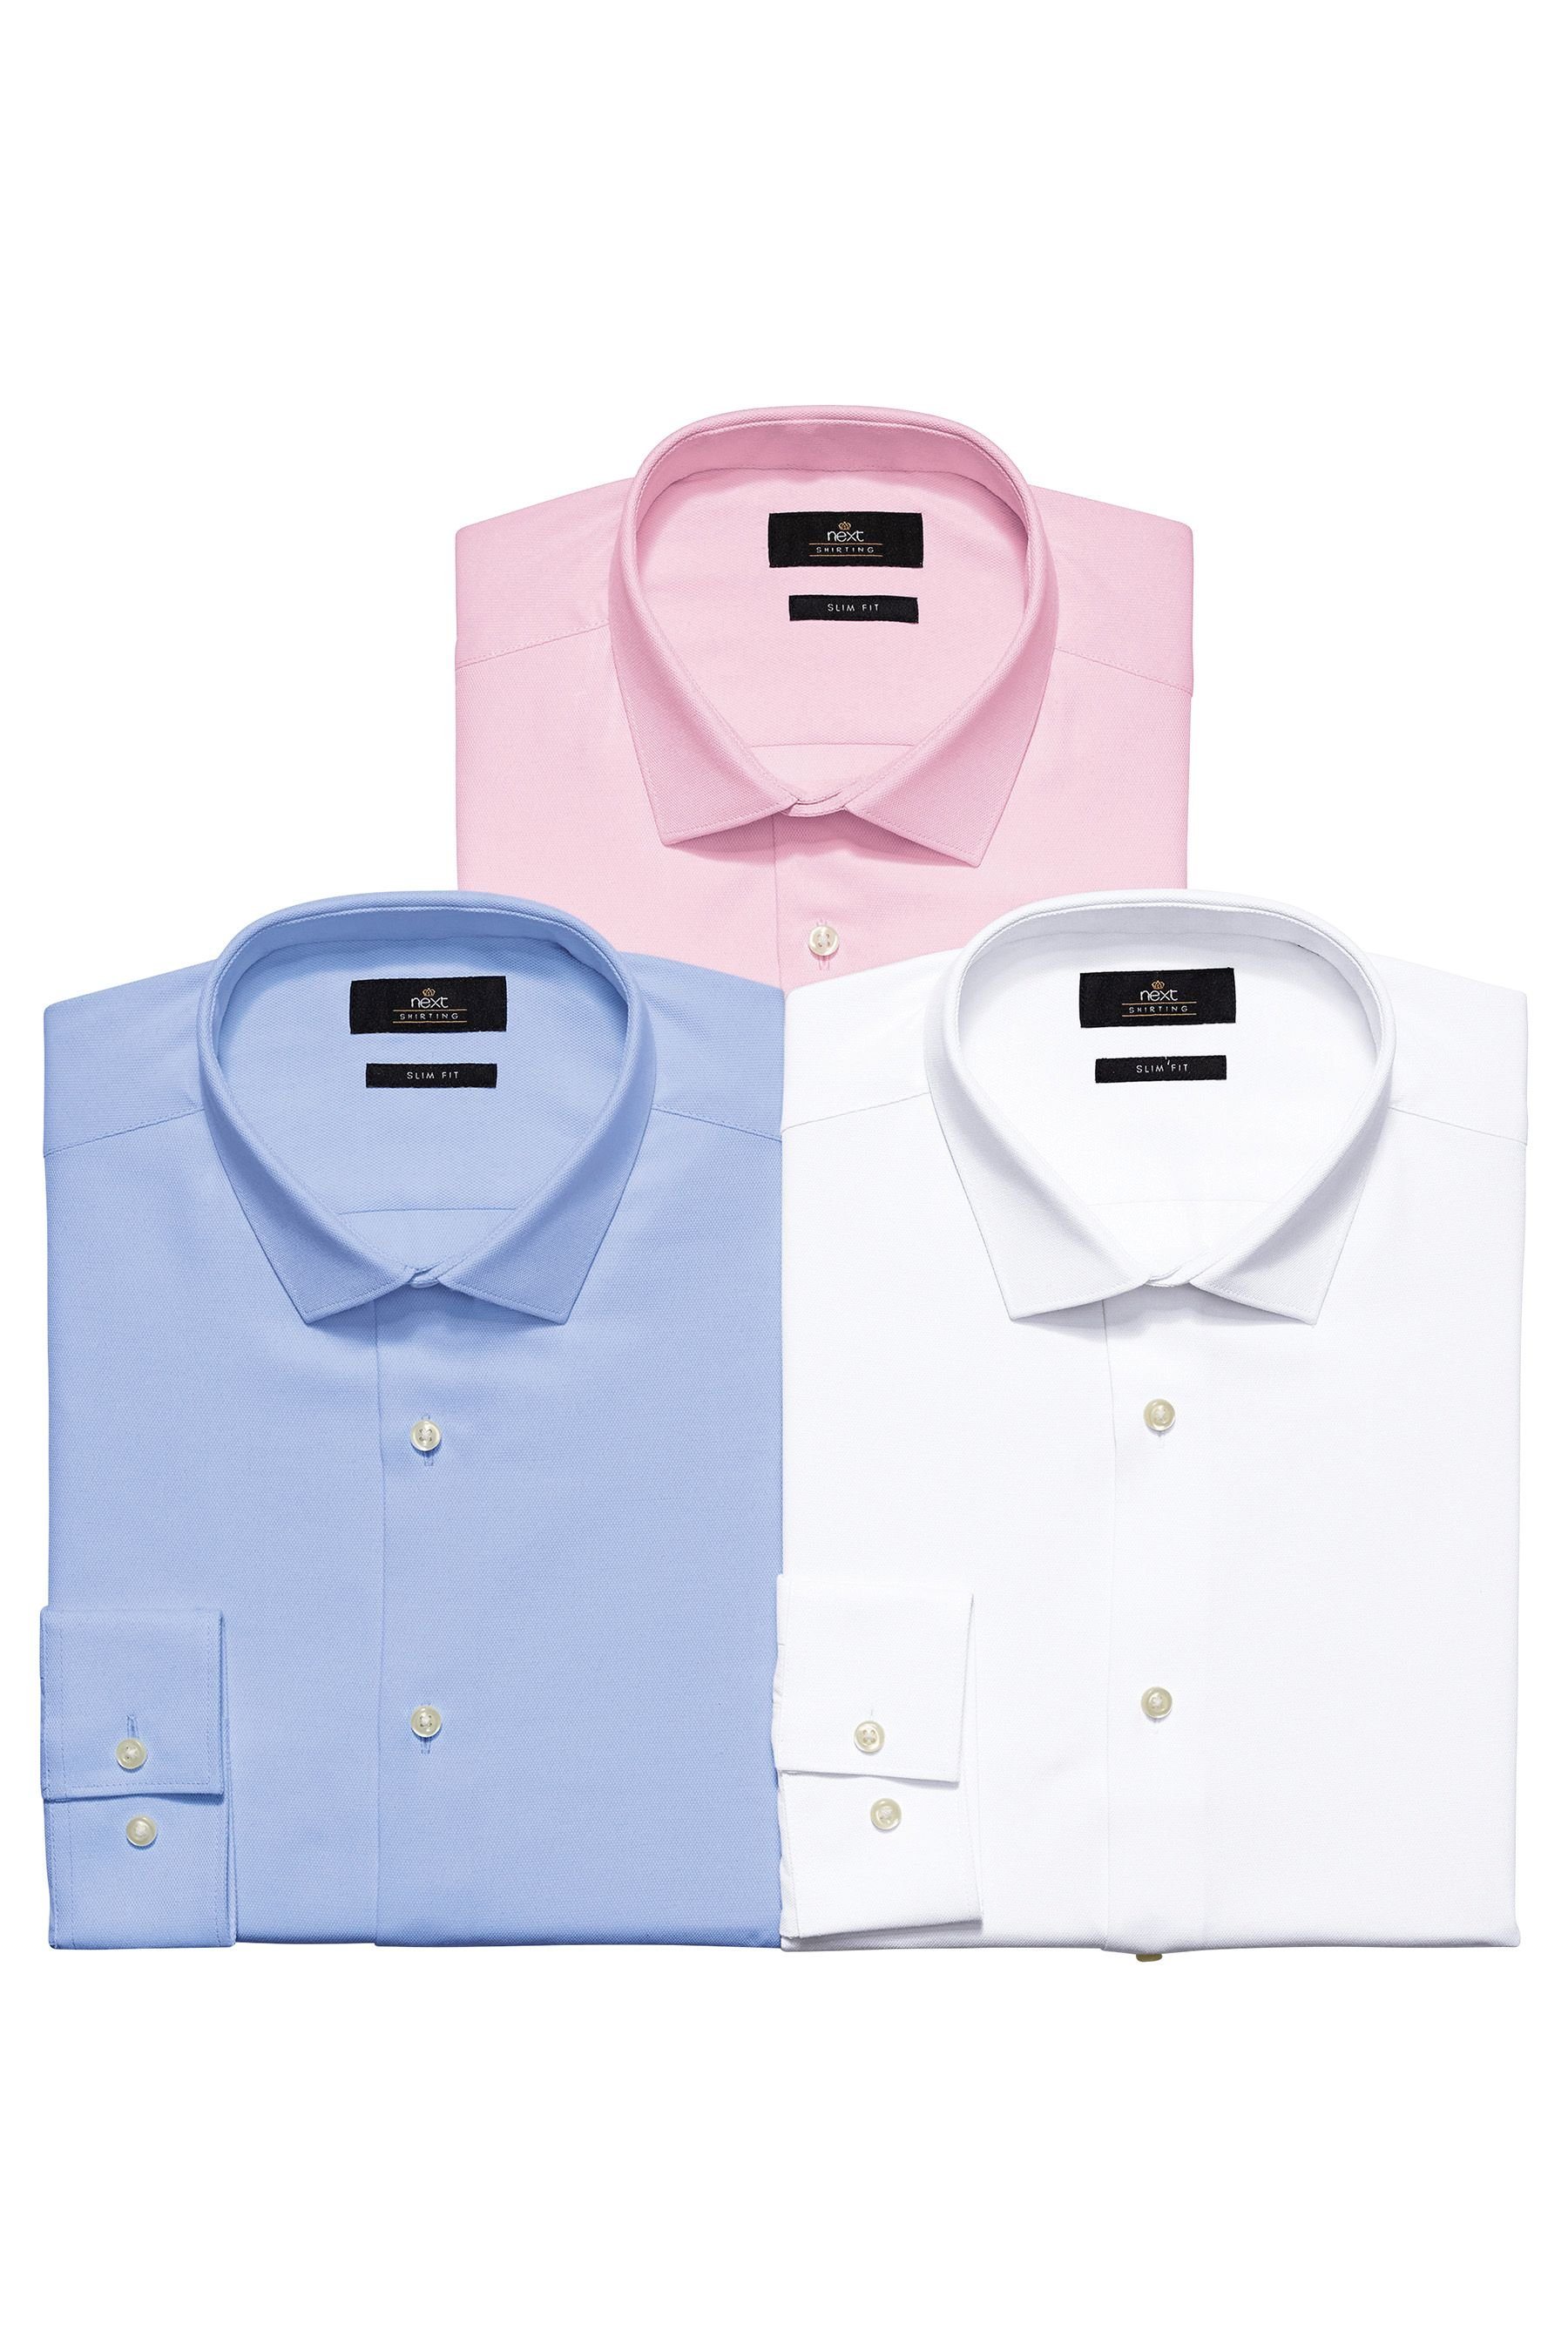 Next Strukturiertes Hemd in Weiß, Blau und Pink, 3er-Pack 3 teilig